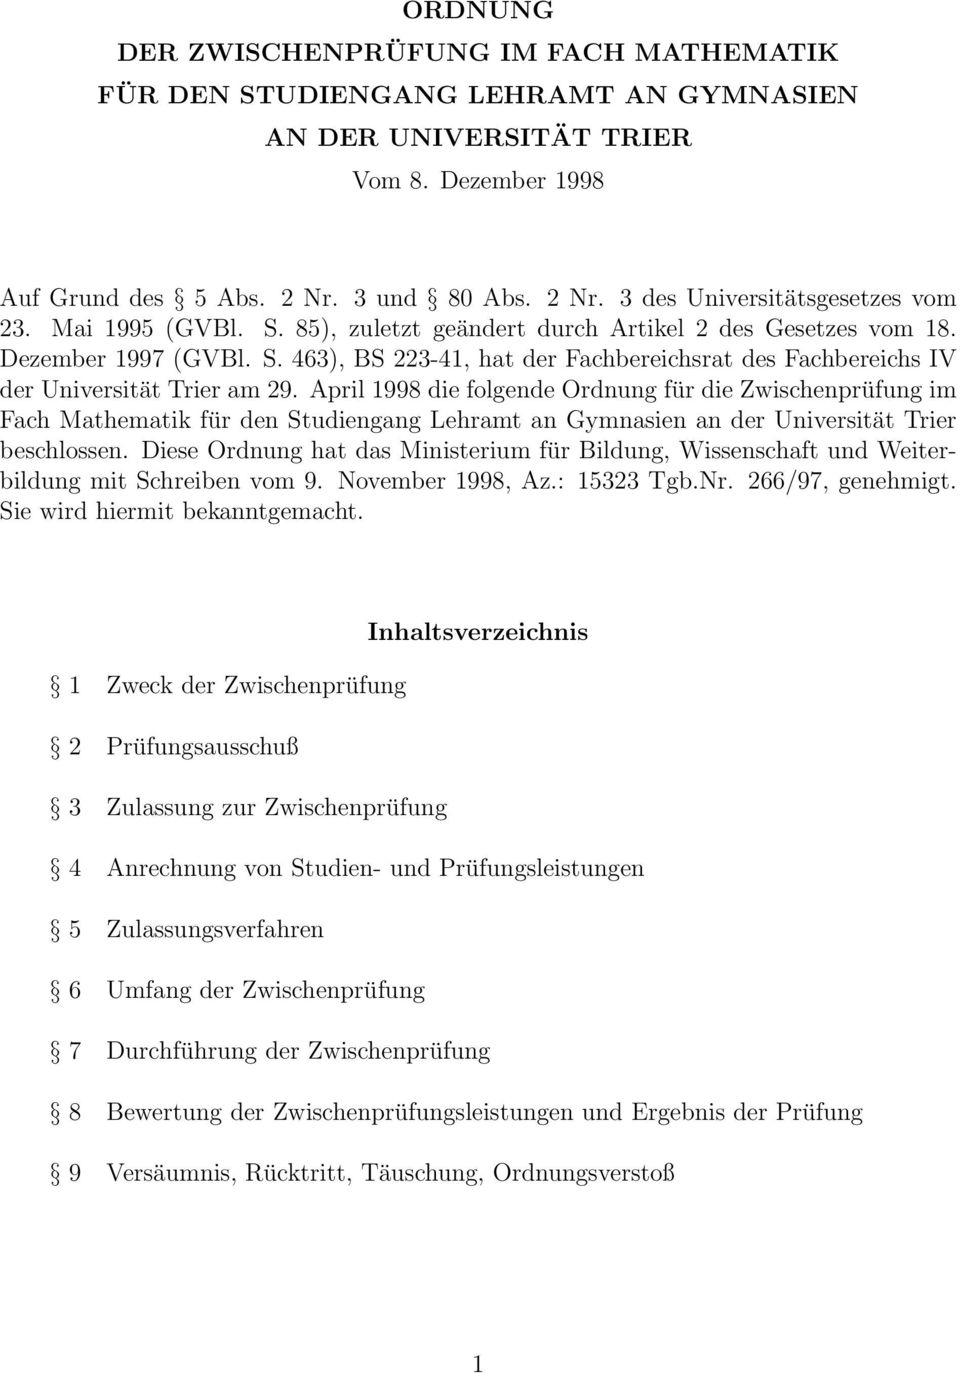 April 1998 die folgende Ordnung für die Zwischenprüfung im Fach Mathematik für den Studiengang Lehramt an Gymnasien an der Universität Trier beschlossen.